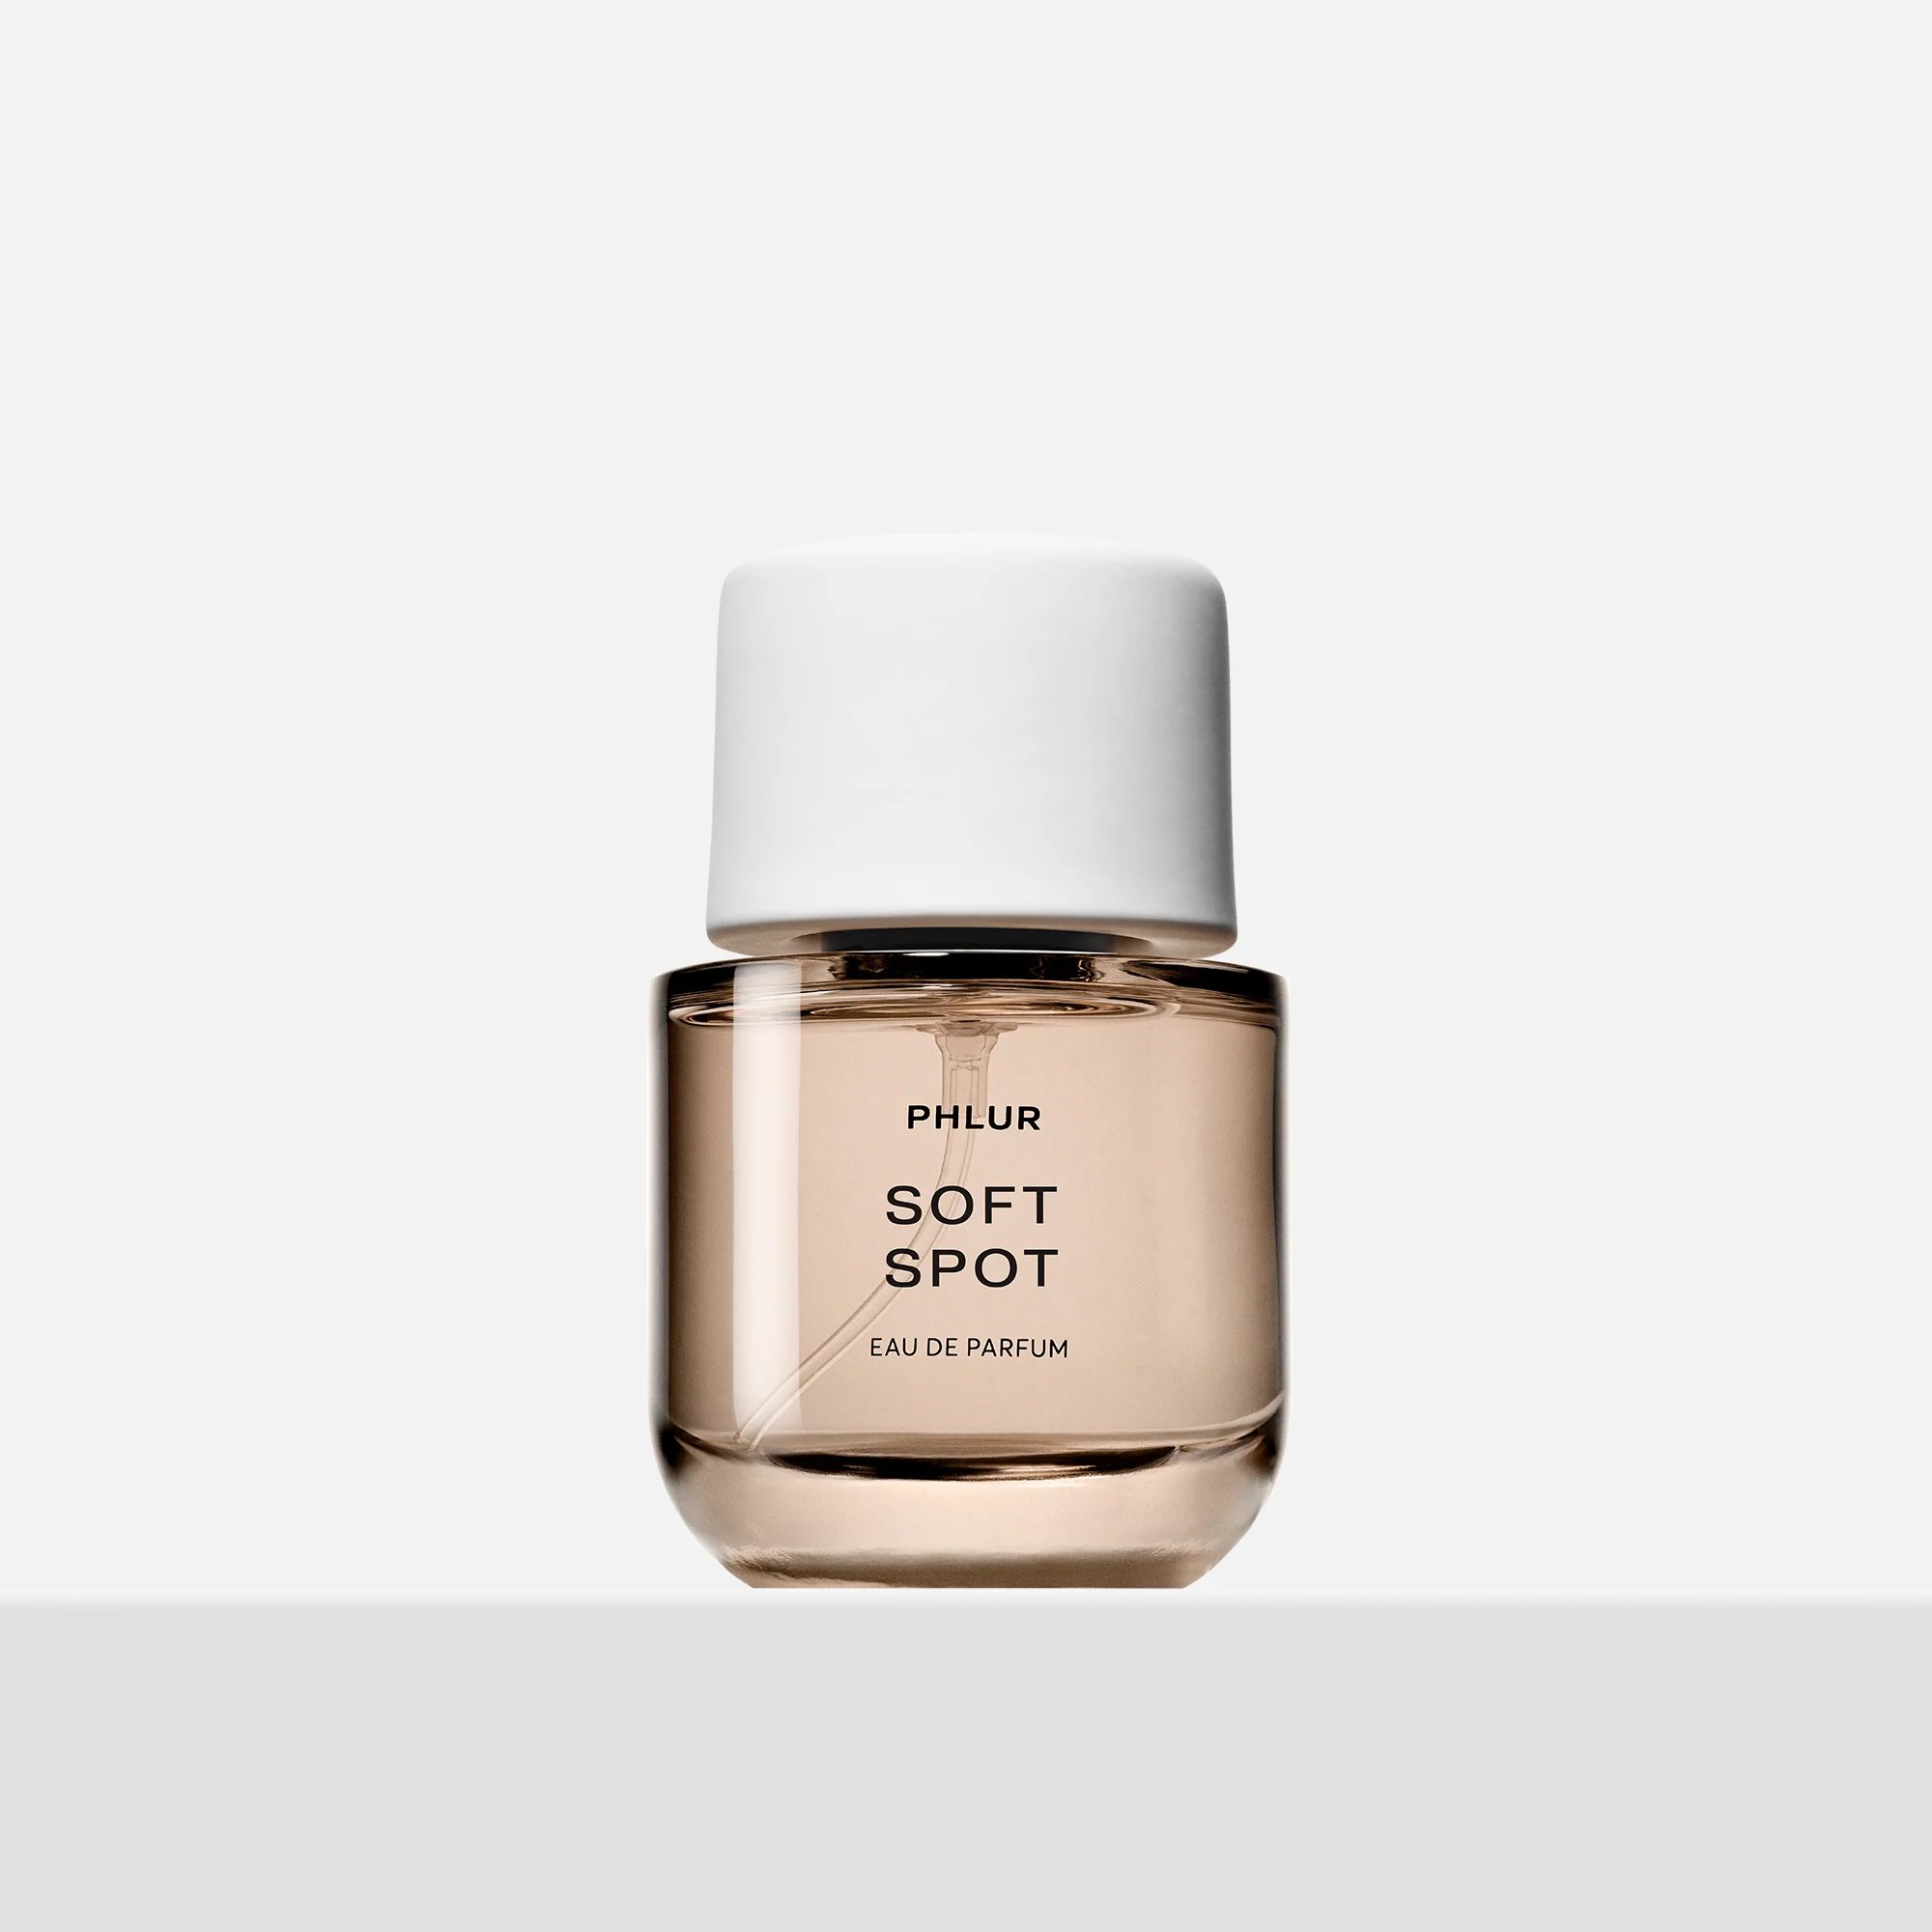 Soft Spot Perfume - Full Size Fragrance | PHLUR